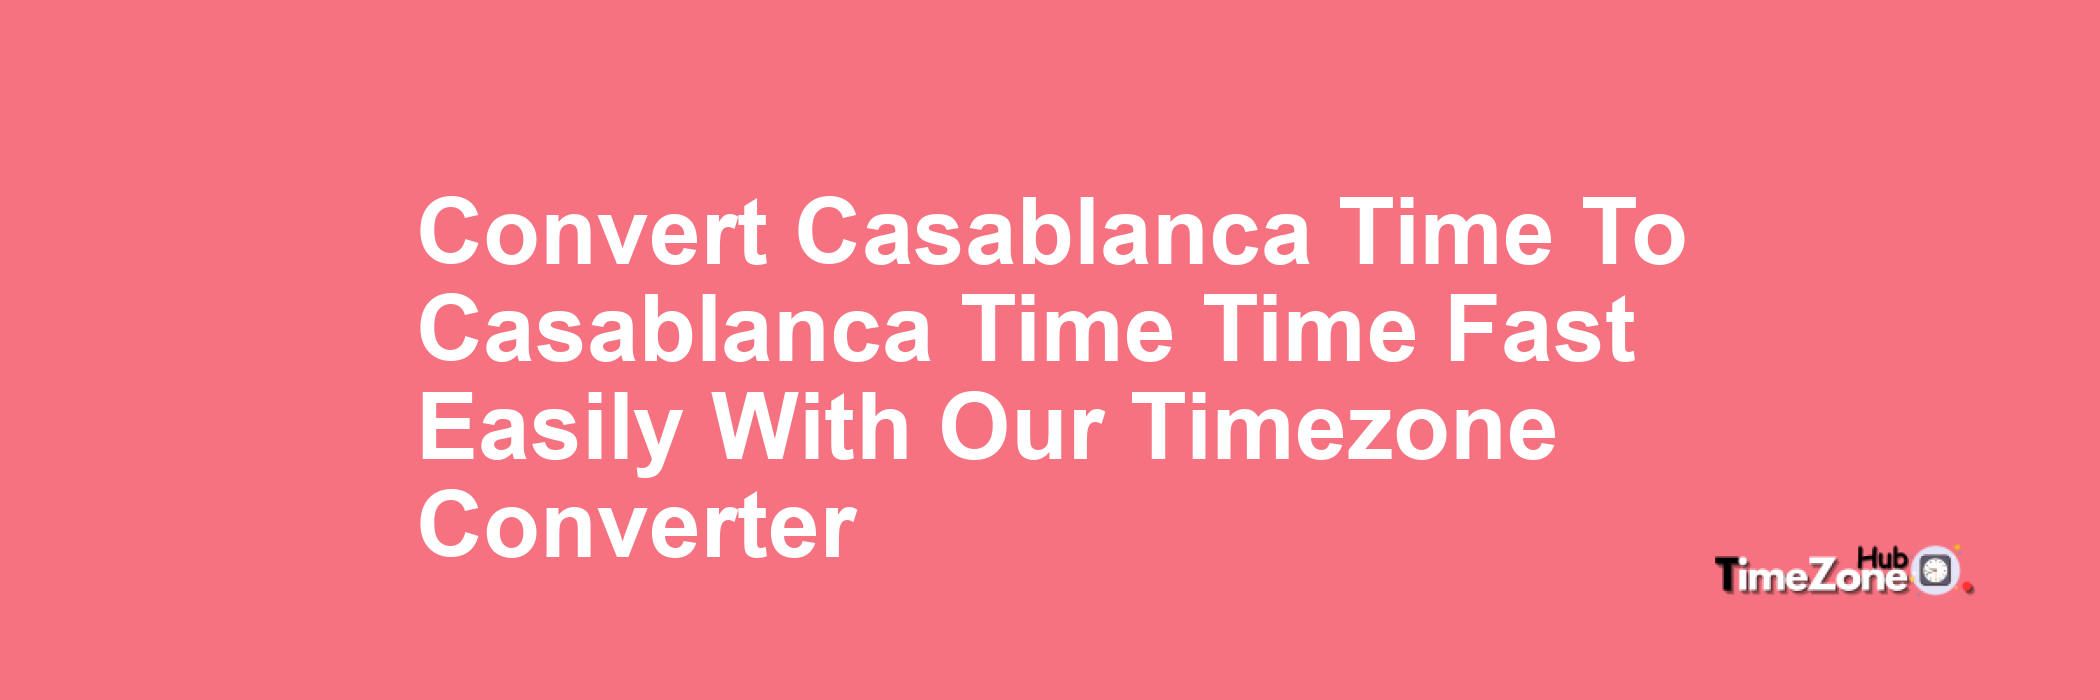 Casablanca Time to Casablanca Time